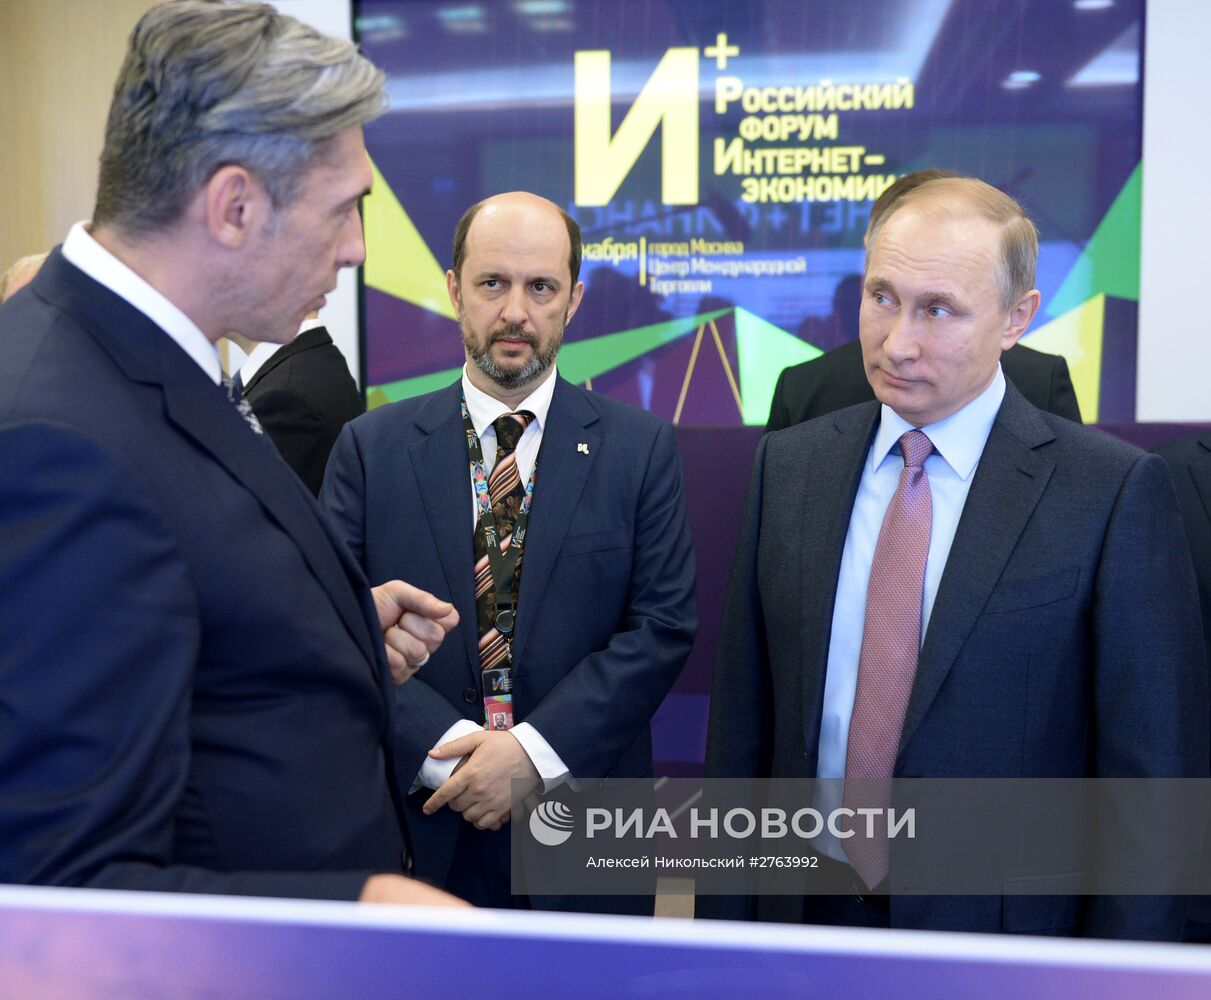 Президент РФ В. Путин принял участие в пленарном заседании первого российского форума "Интернет Экономика"